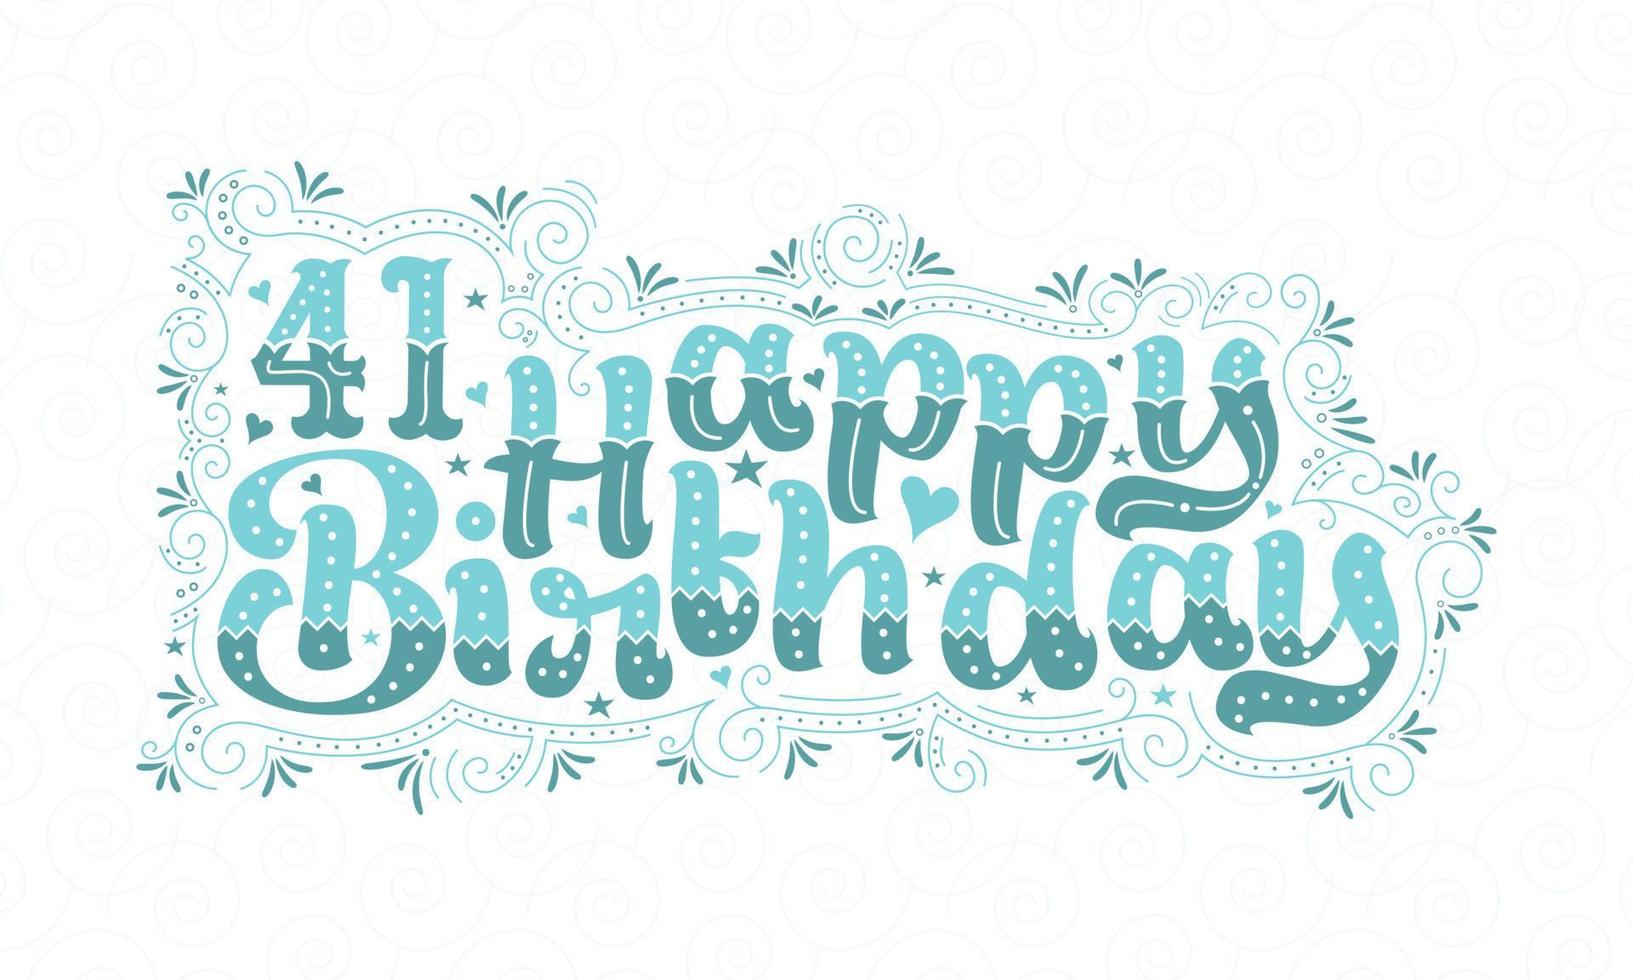 41e gelukkige verjaardag belettering, 41 jaar verjaardag mooi typografieontwerp met aqua stippen, lijnen en bladeren. vector